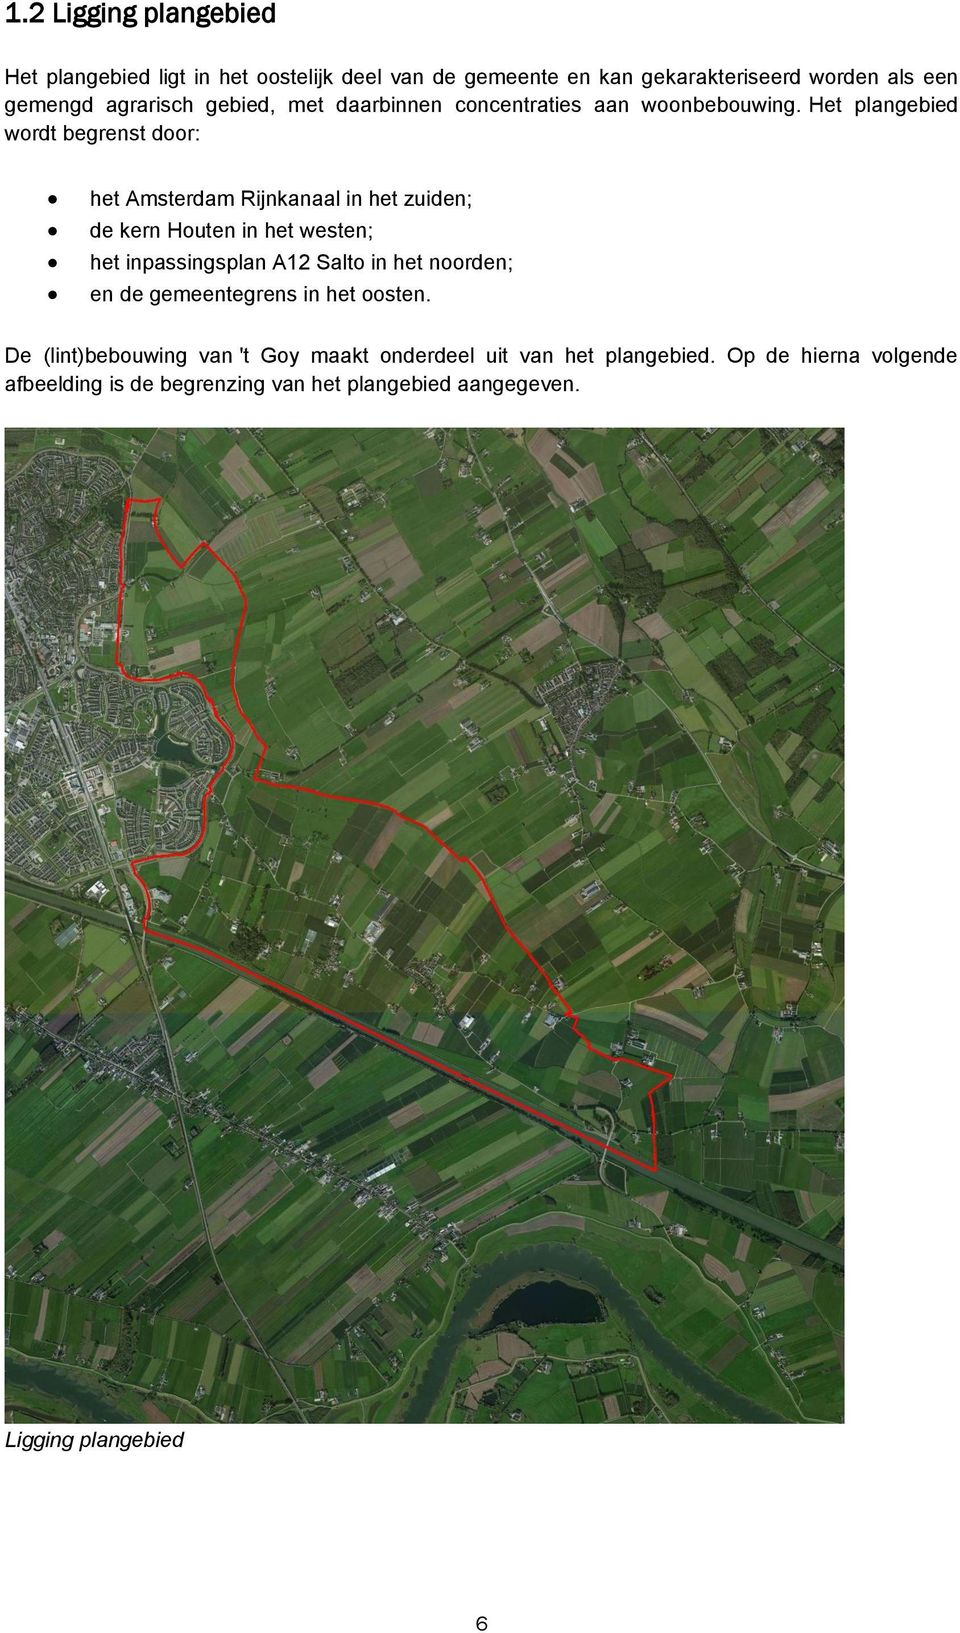 Het plangebied wordt begrenst door: het Amsterdam Rijnkanaal in het zuiden; de kern Houten in het westen; het inpassingsplan A12 Salto in